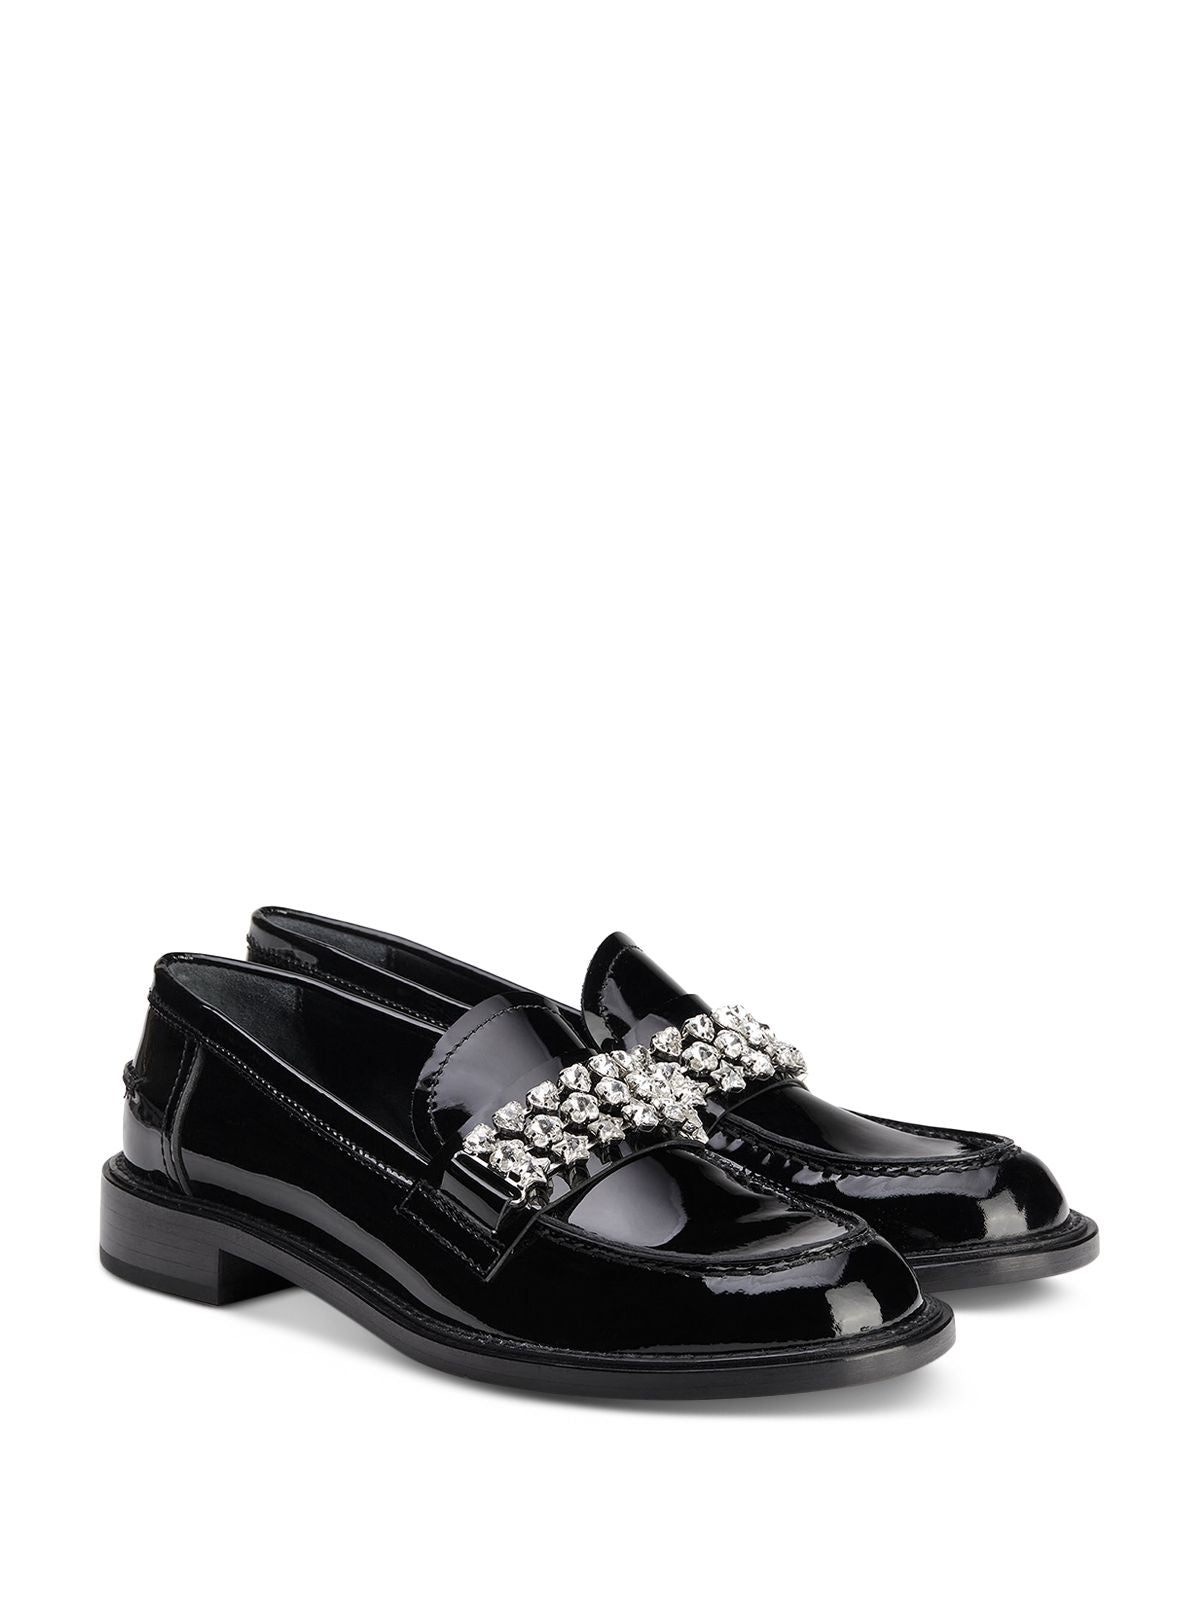 AGL Womens Black Embellished Padded Lola Round Toe Slip On Leather Dress Moccasins Shoes 35